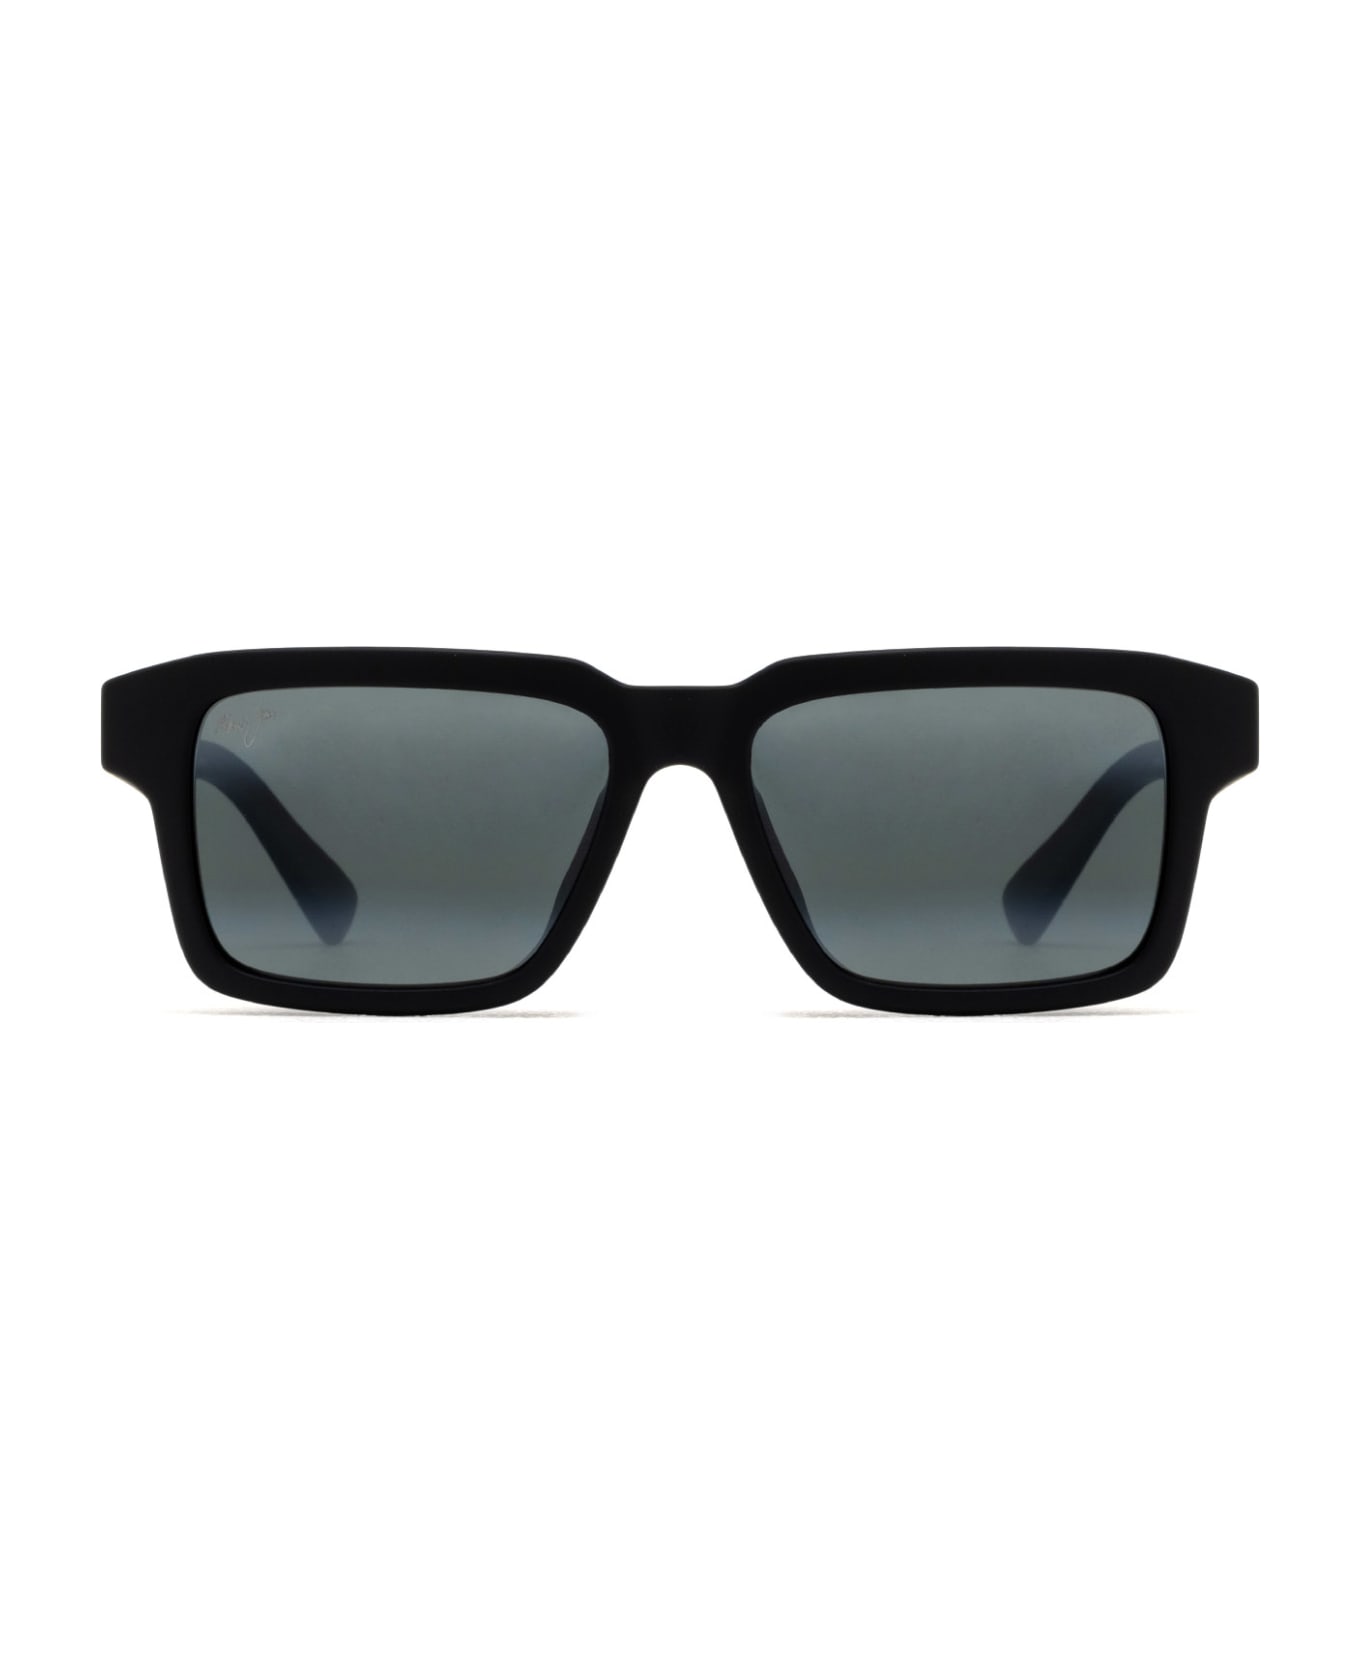 Maui Jim Mj635 Matte Black Sunglasses - Matte Black